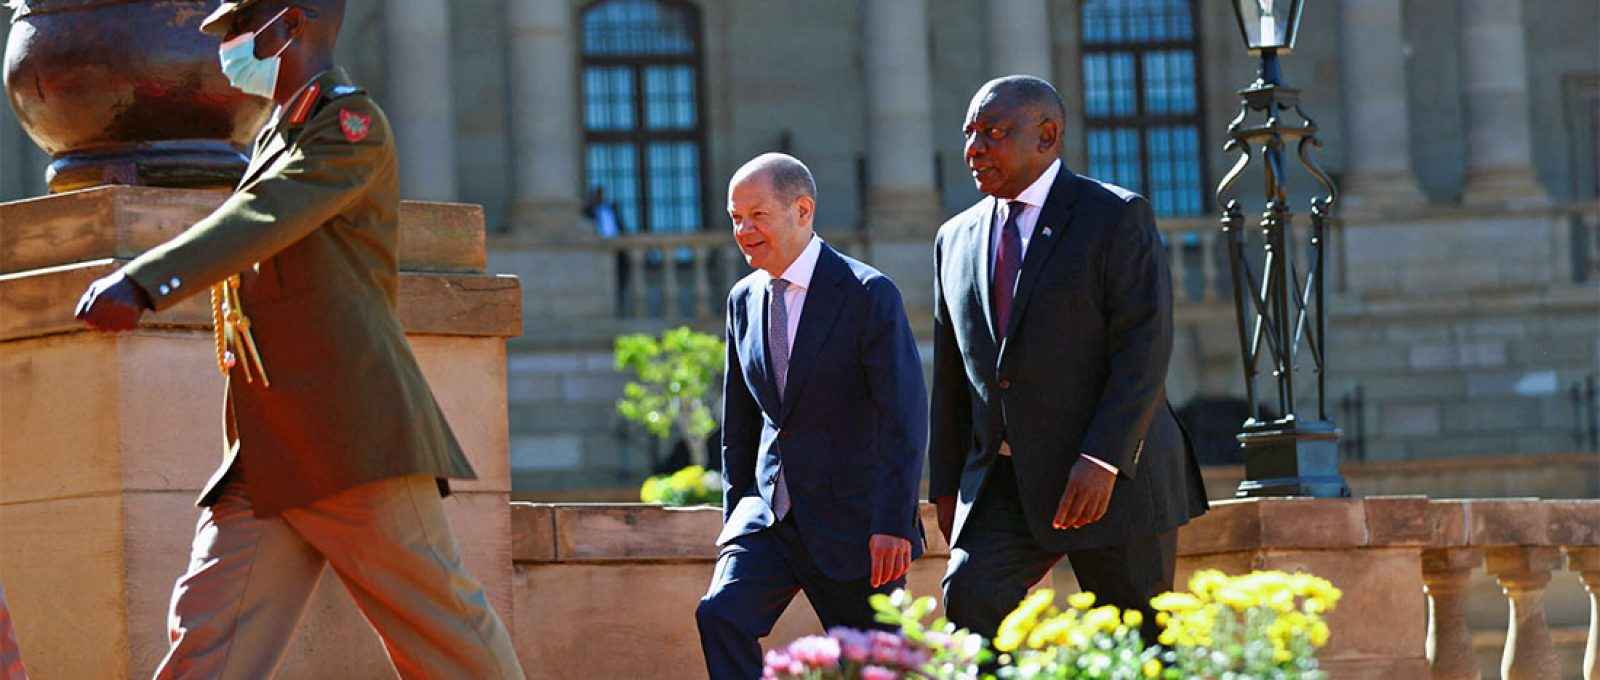 O chanceler alemão, Olaf Scholz, é recebido pelo presidente sul-africano, Cyril Ramaphosa, em Pretória, África do Sul, em 24 de maio de 2022 (Siphiwe Sibeko/Reuters).